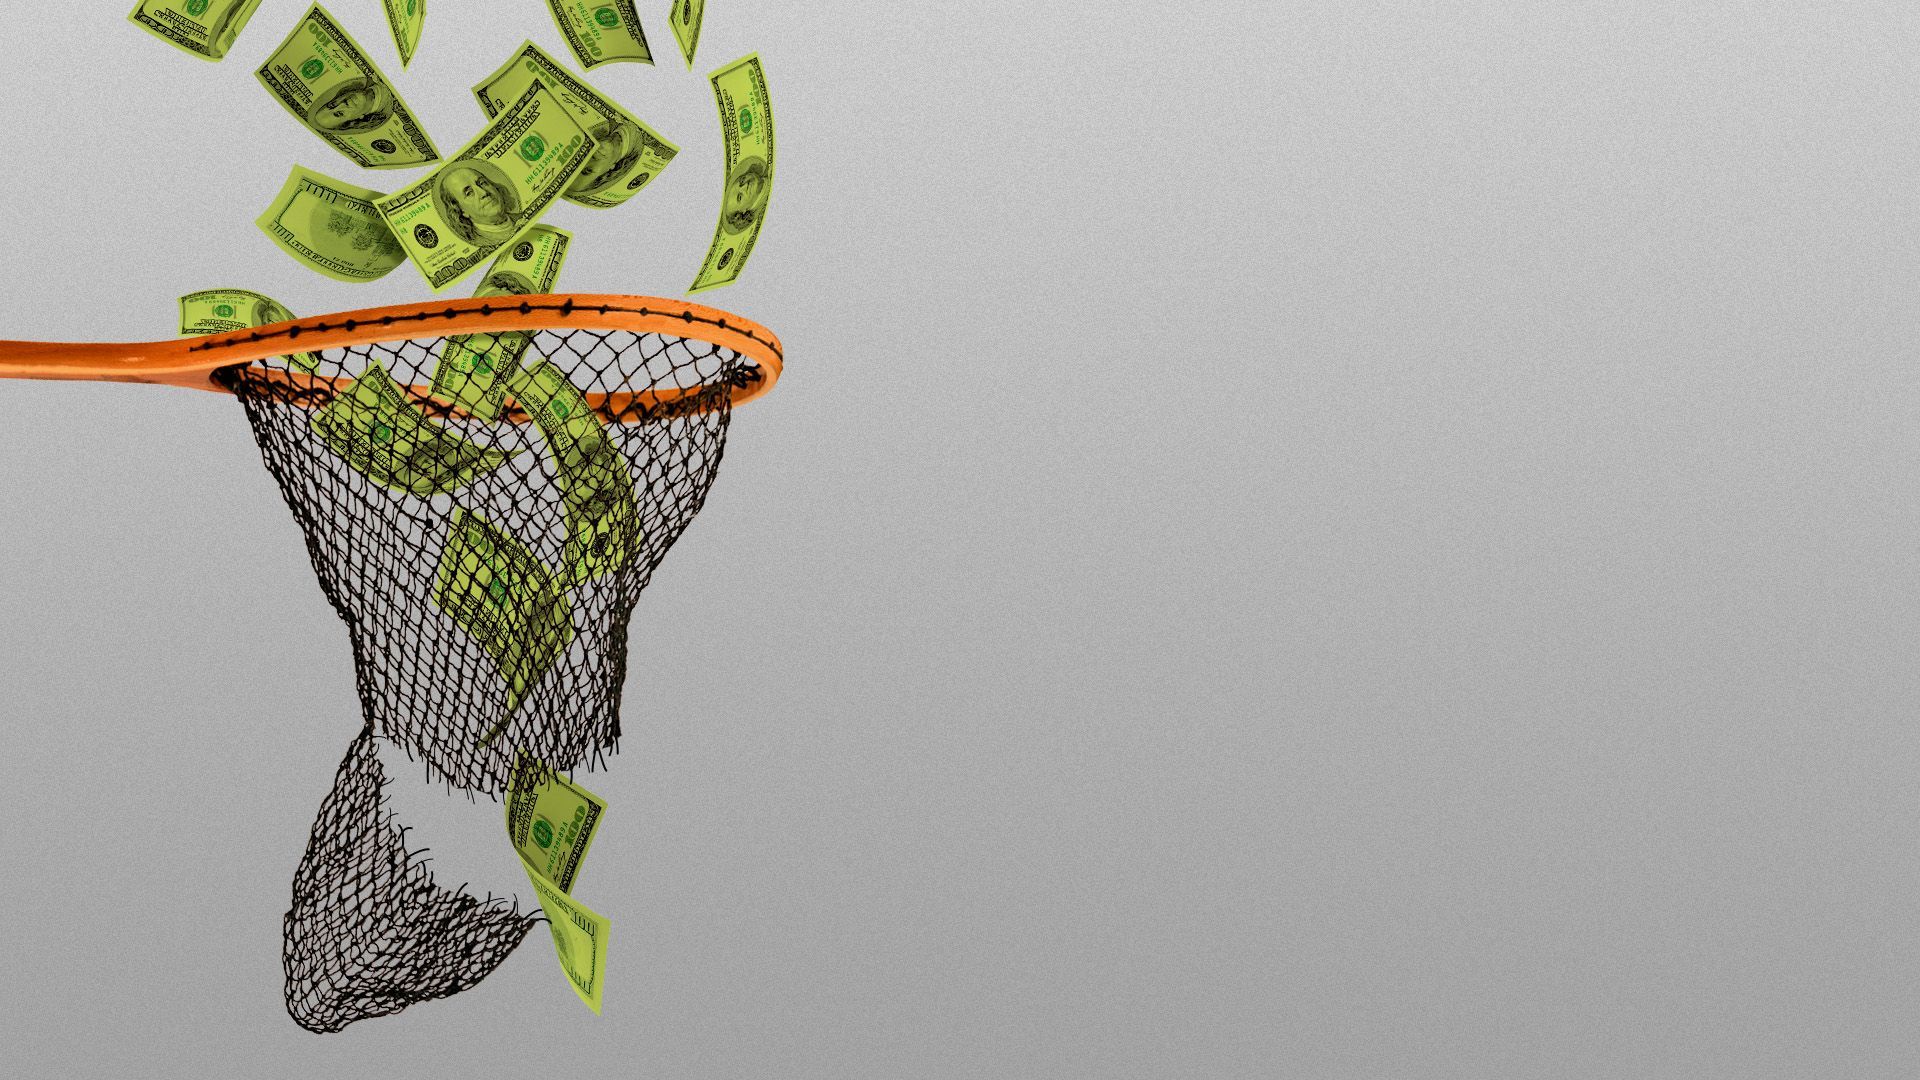 Illustration of hundred dollar bills falling through a broken net